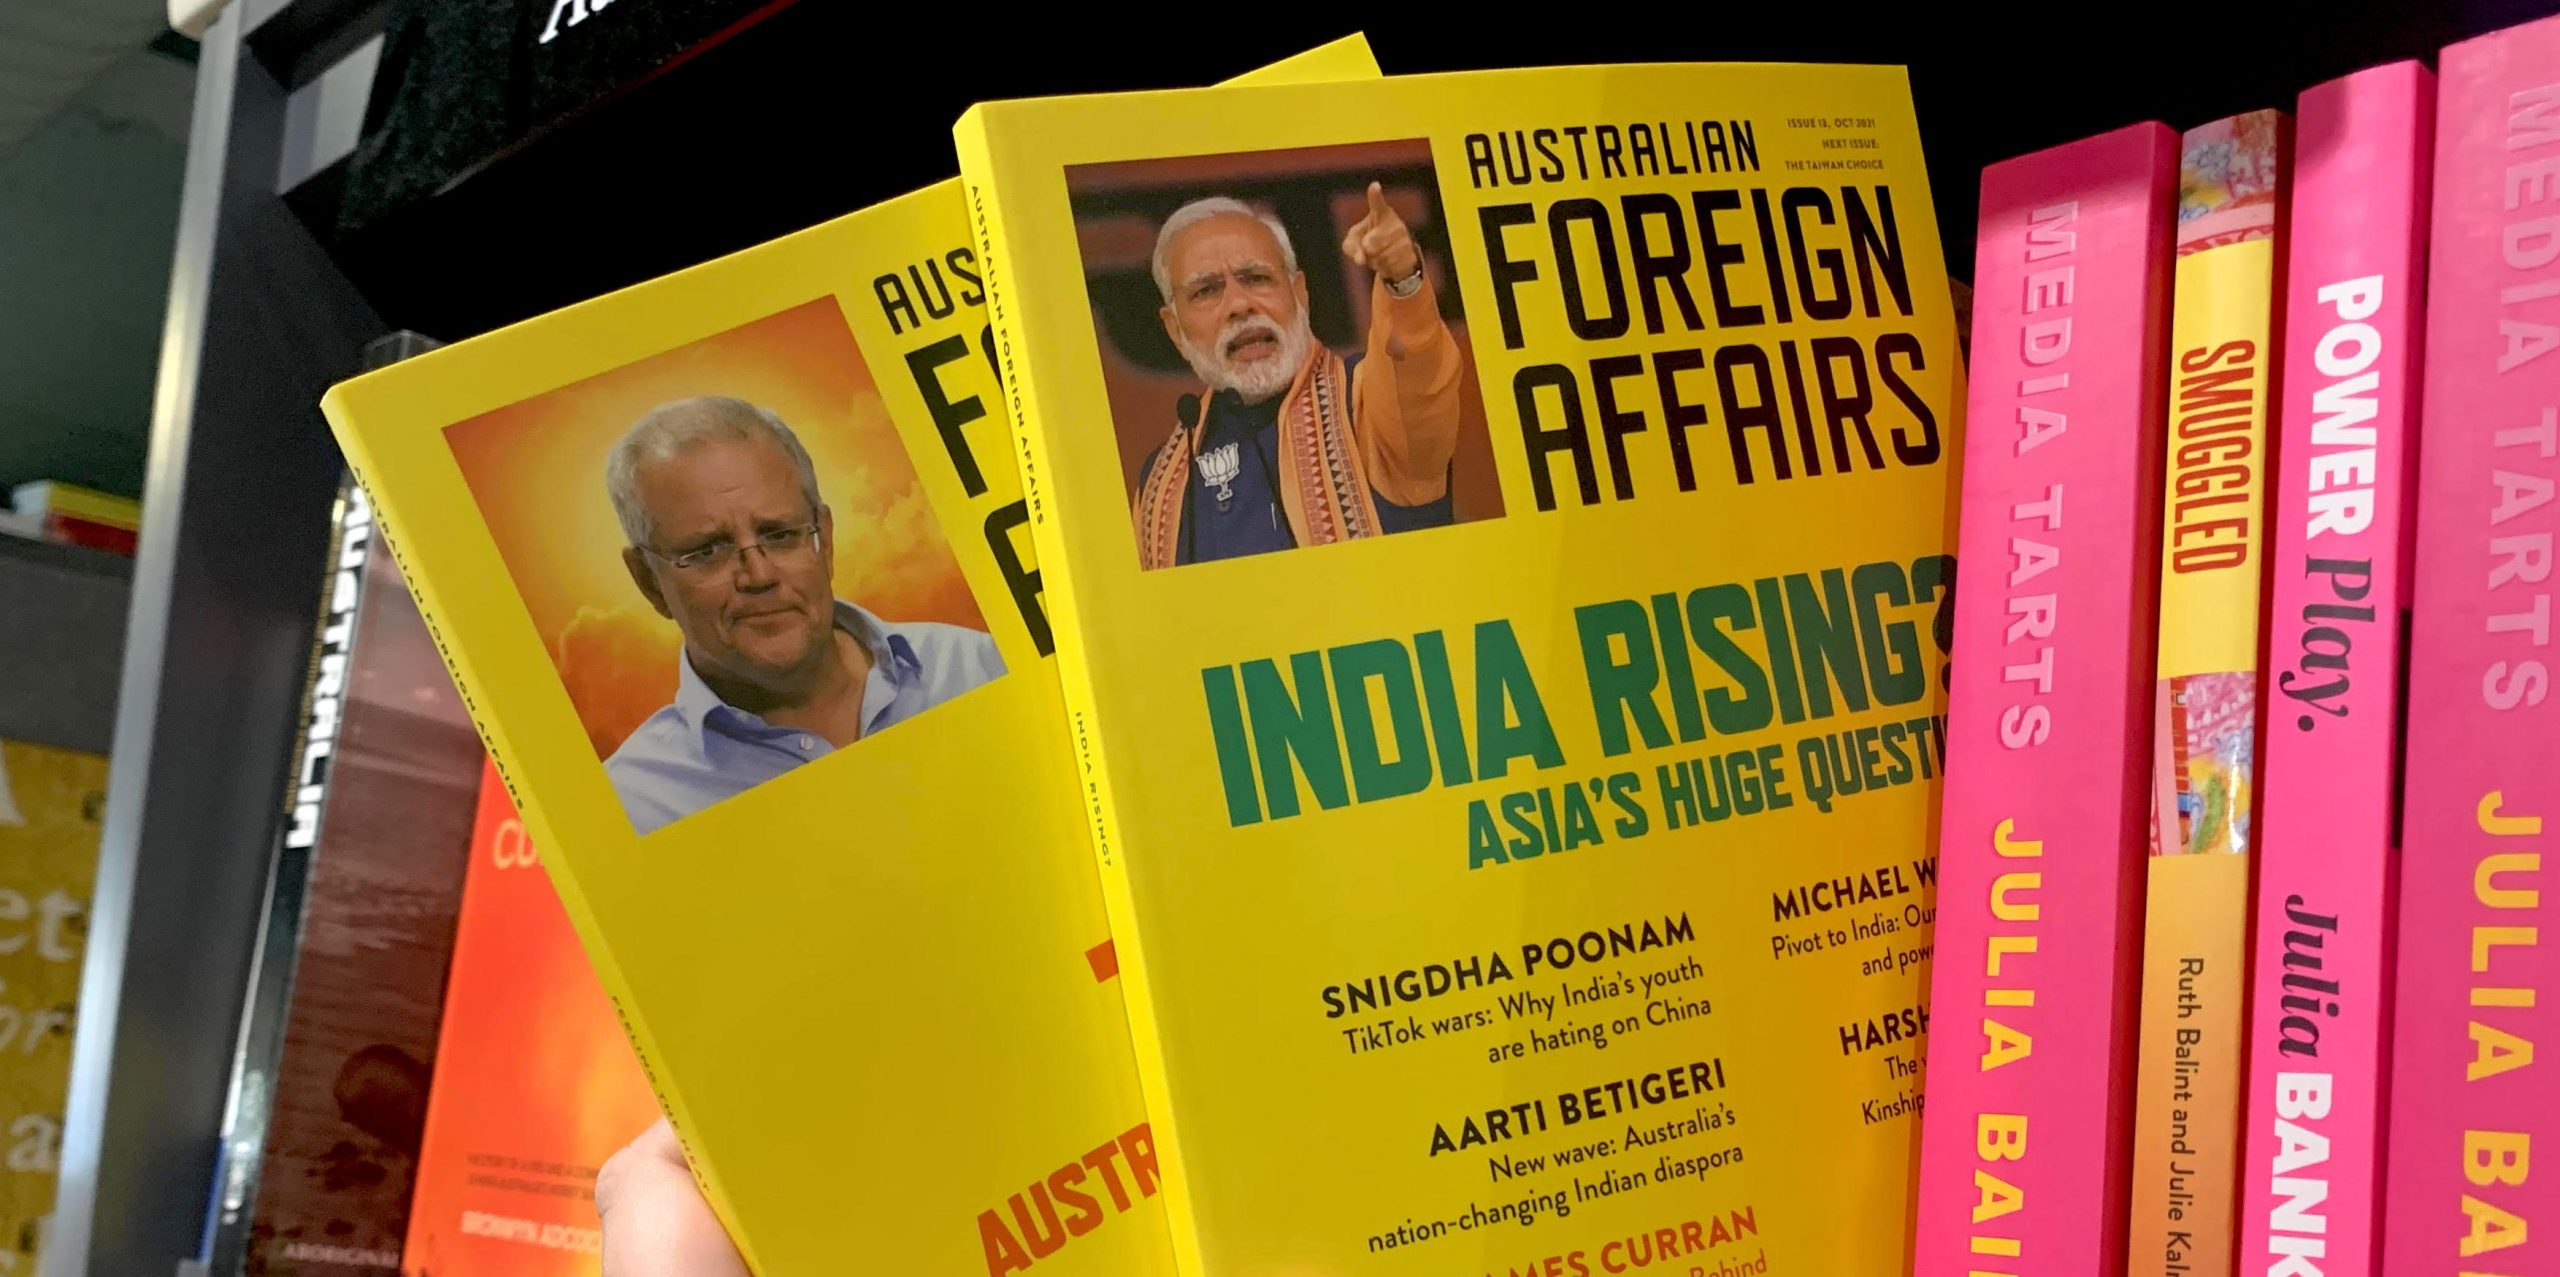 Australian Foreign Affairs journal